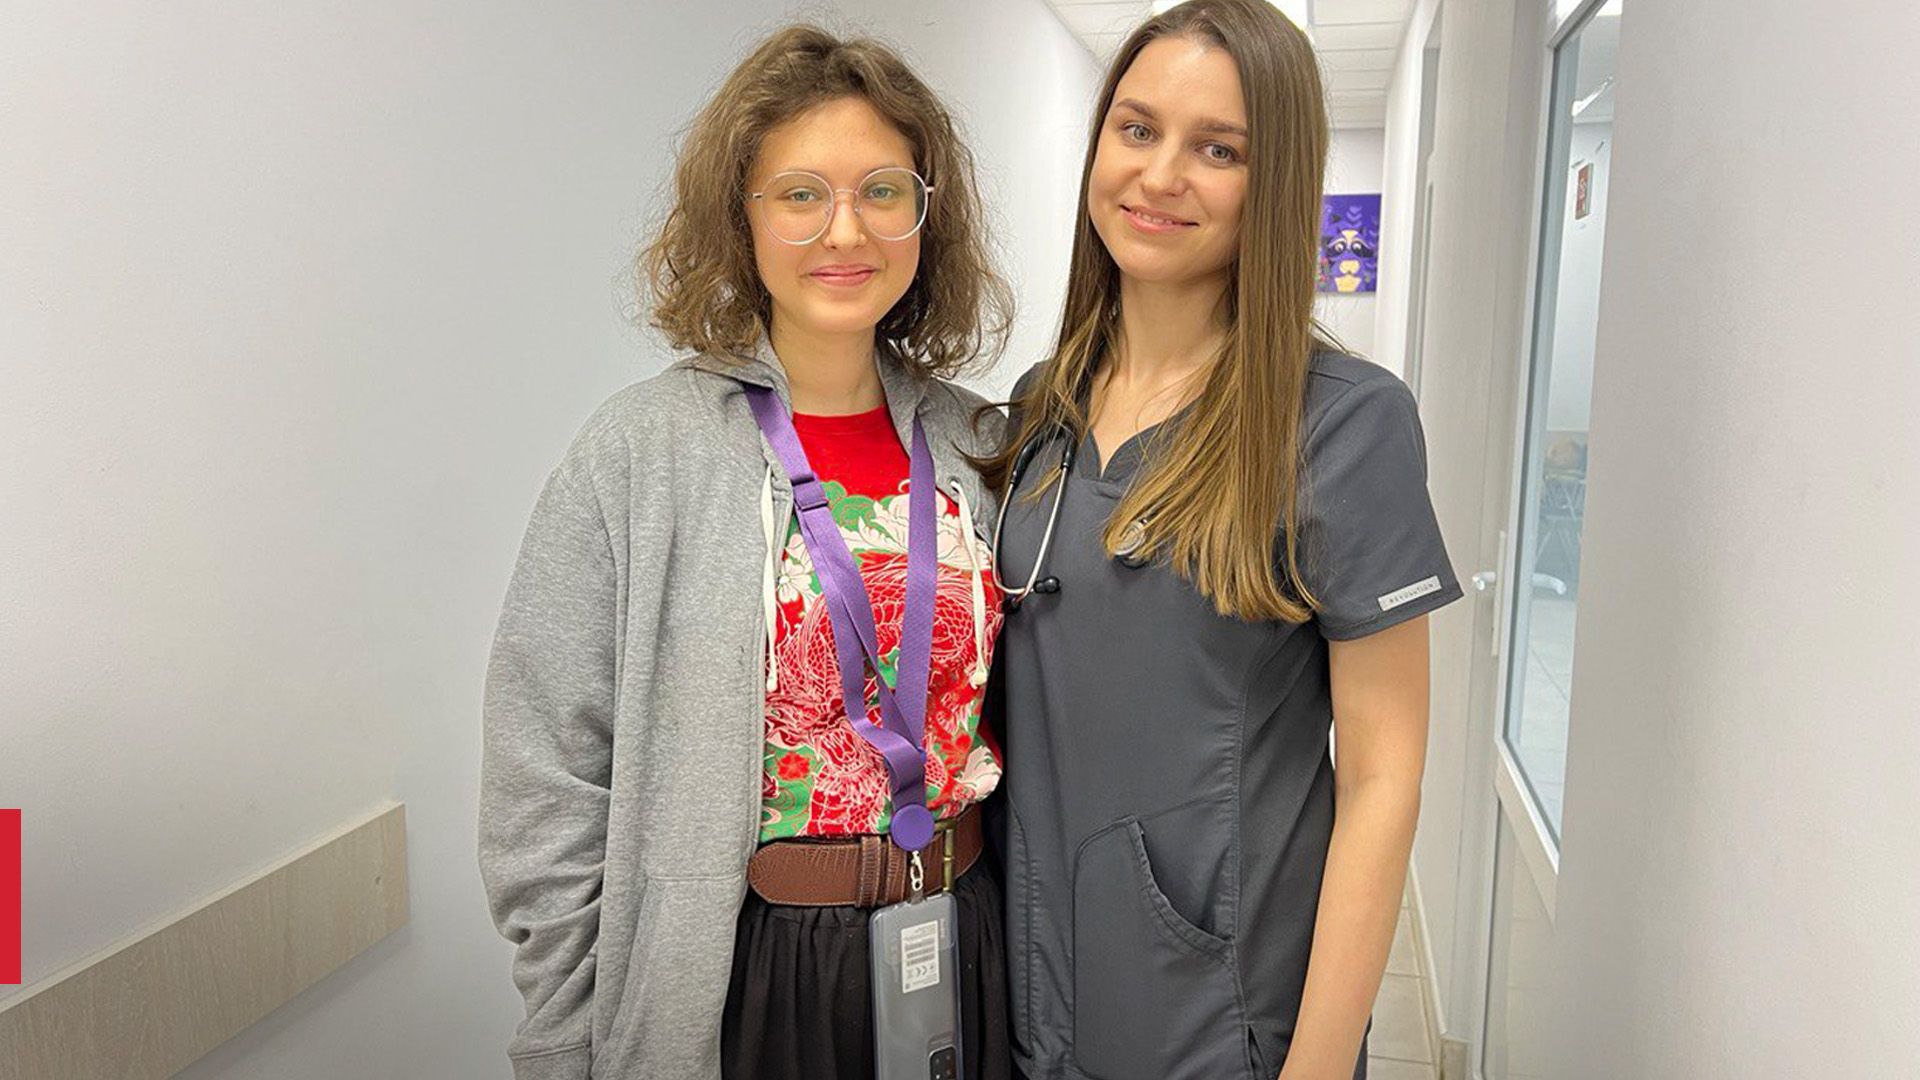 Цирроз печени в 17 лет: во Львове спасли девушку с редкой патологией - Здоровье 24